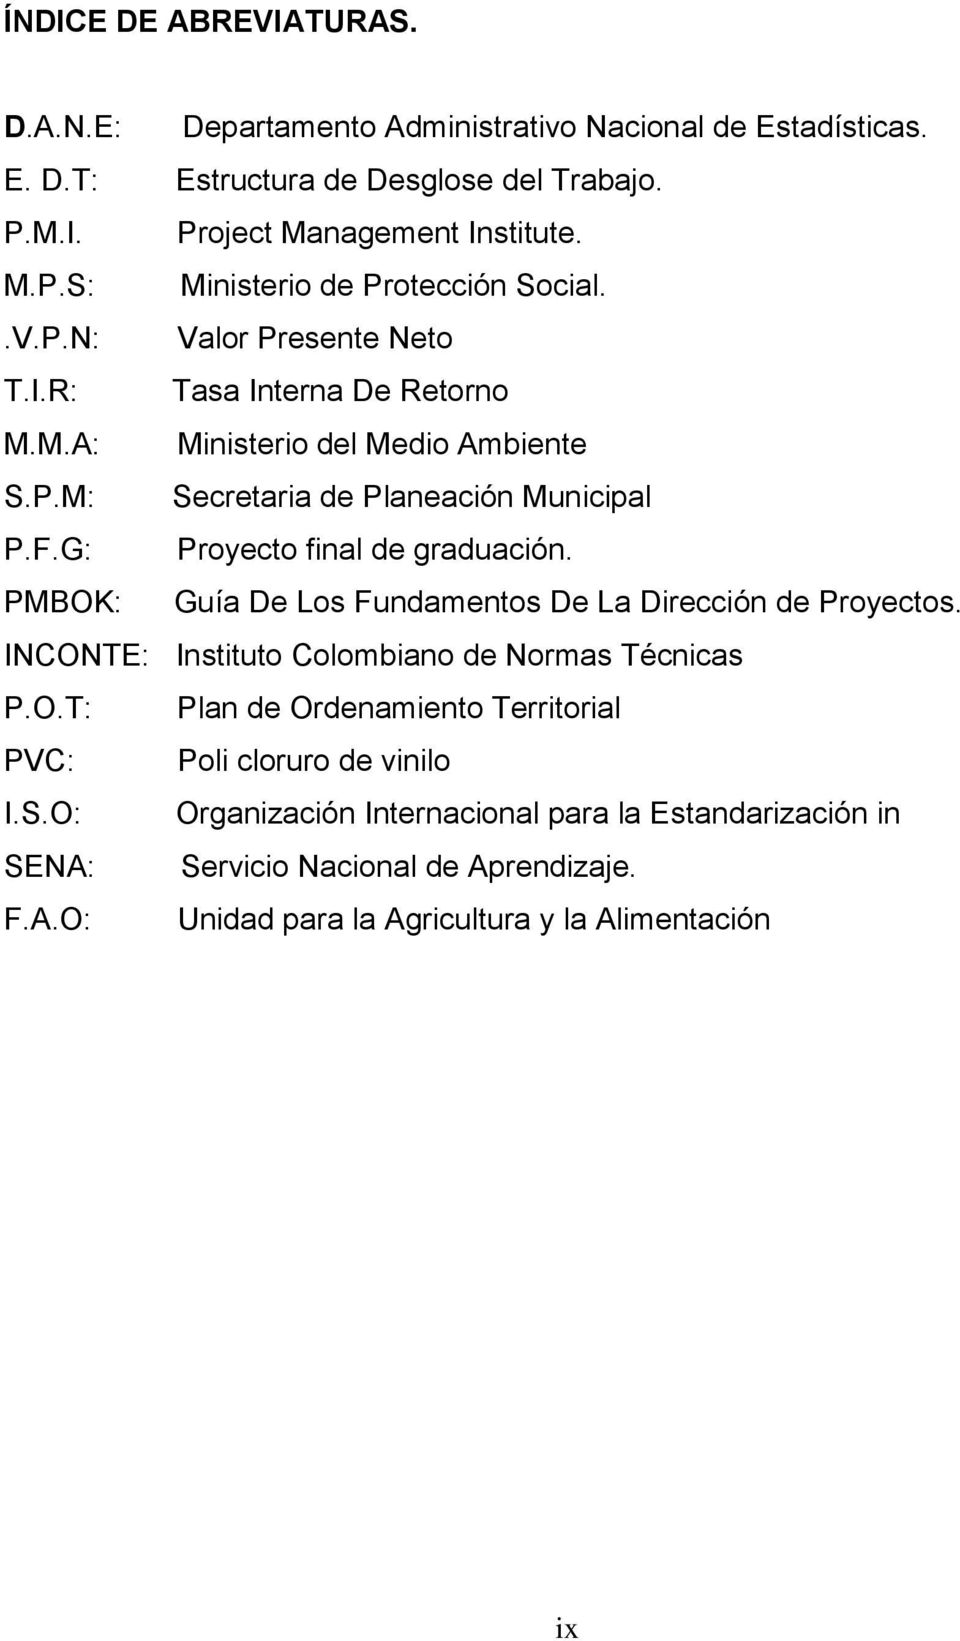 PMBOK: Guía De Los Fundamentos De La Dirección de Proyectos. INCONTE: Instituto Colombiano de Normas Técnicas P.O.T: Plan de Ordenamiento Territorial PVC: Poli cloruro de vinilo I.